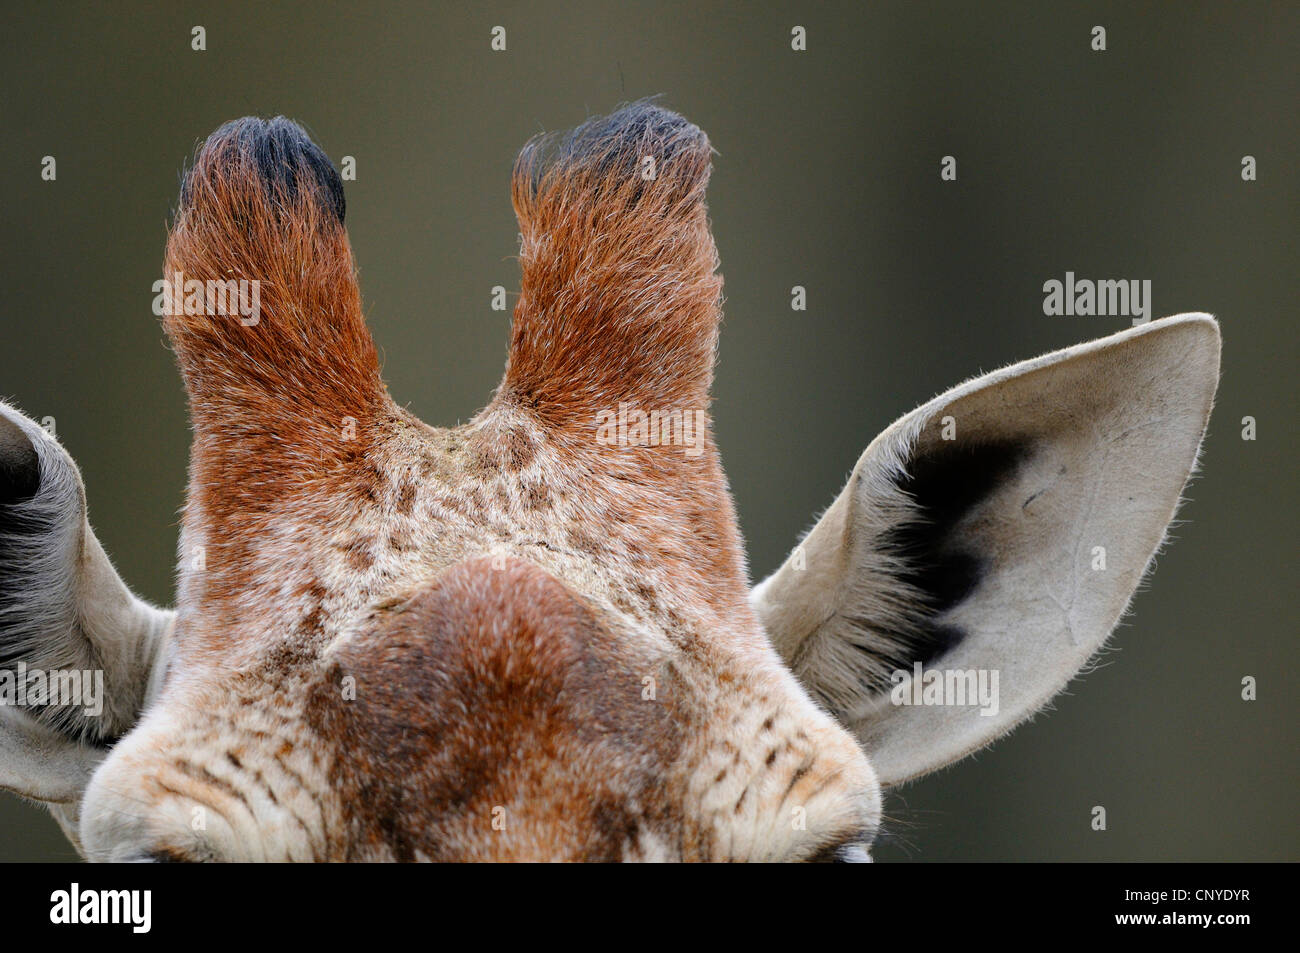 reticulated giraffe (Giraffa camelopardalis reticulata), ossicones an forehead hutch Stock Photo